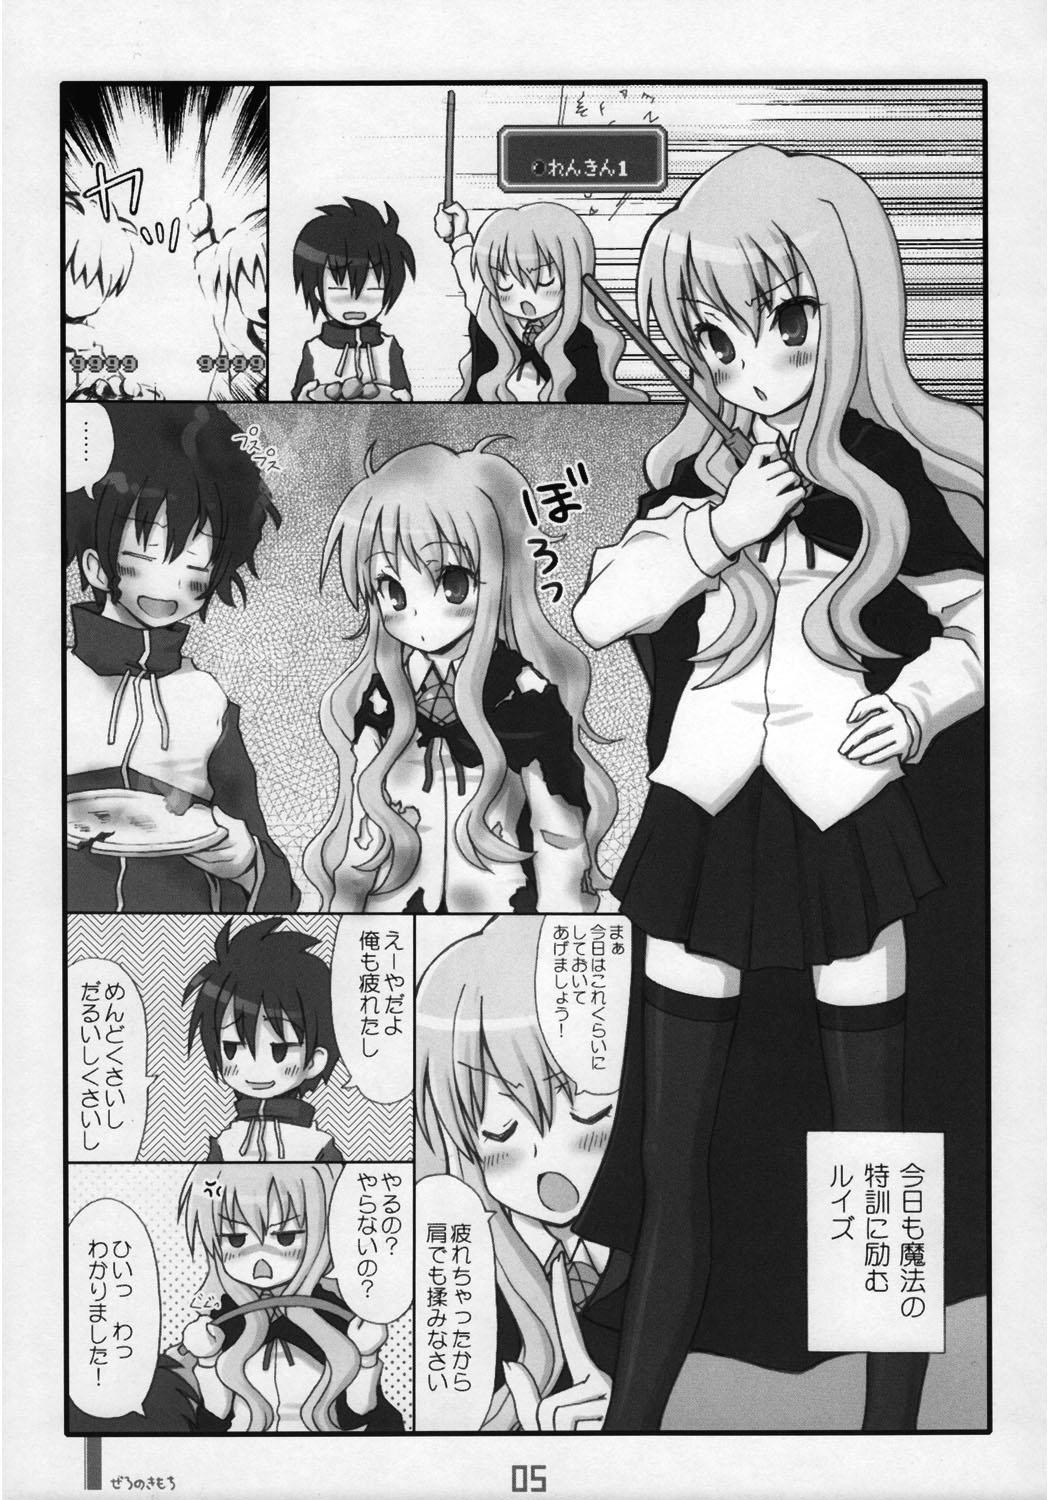 Coroa Zero No Kimochi - Zero no tsukaima Ass Fetish - Page 5